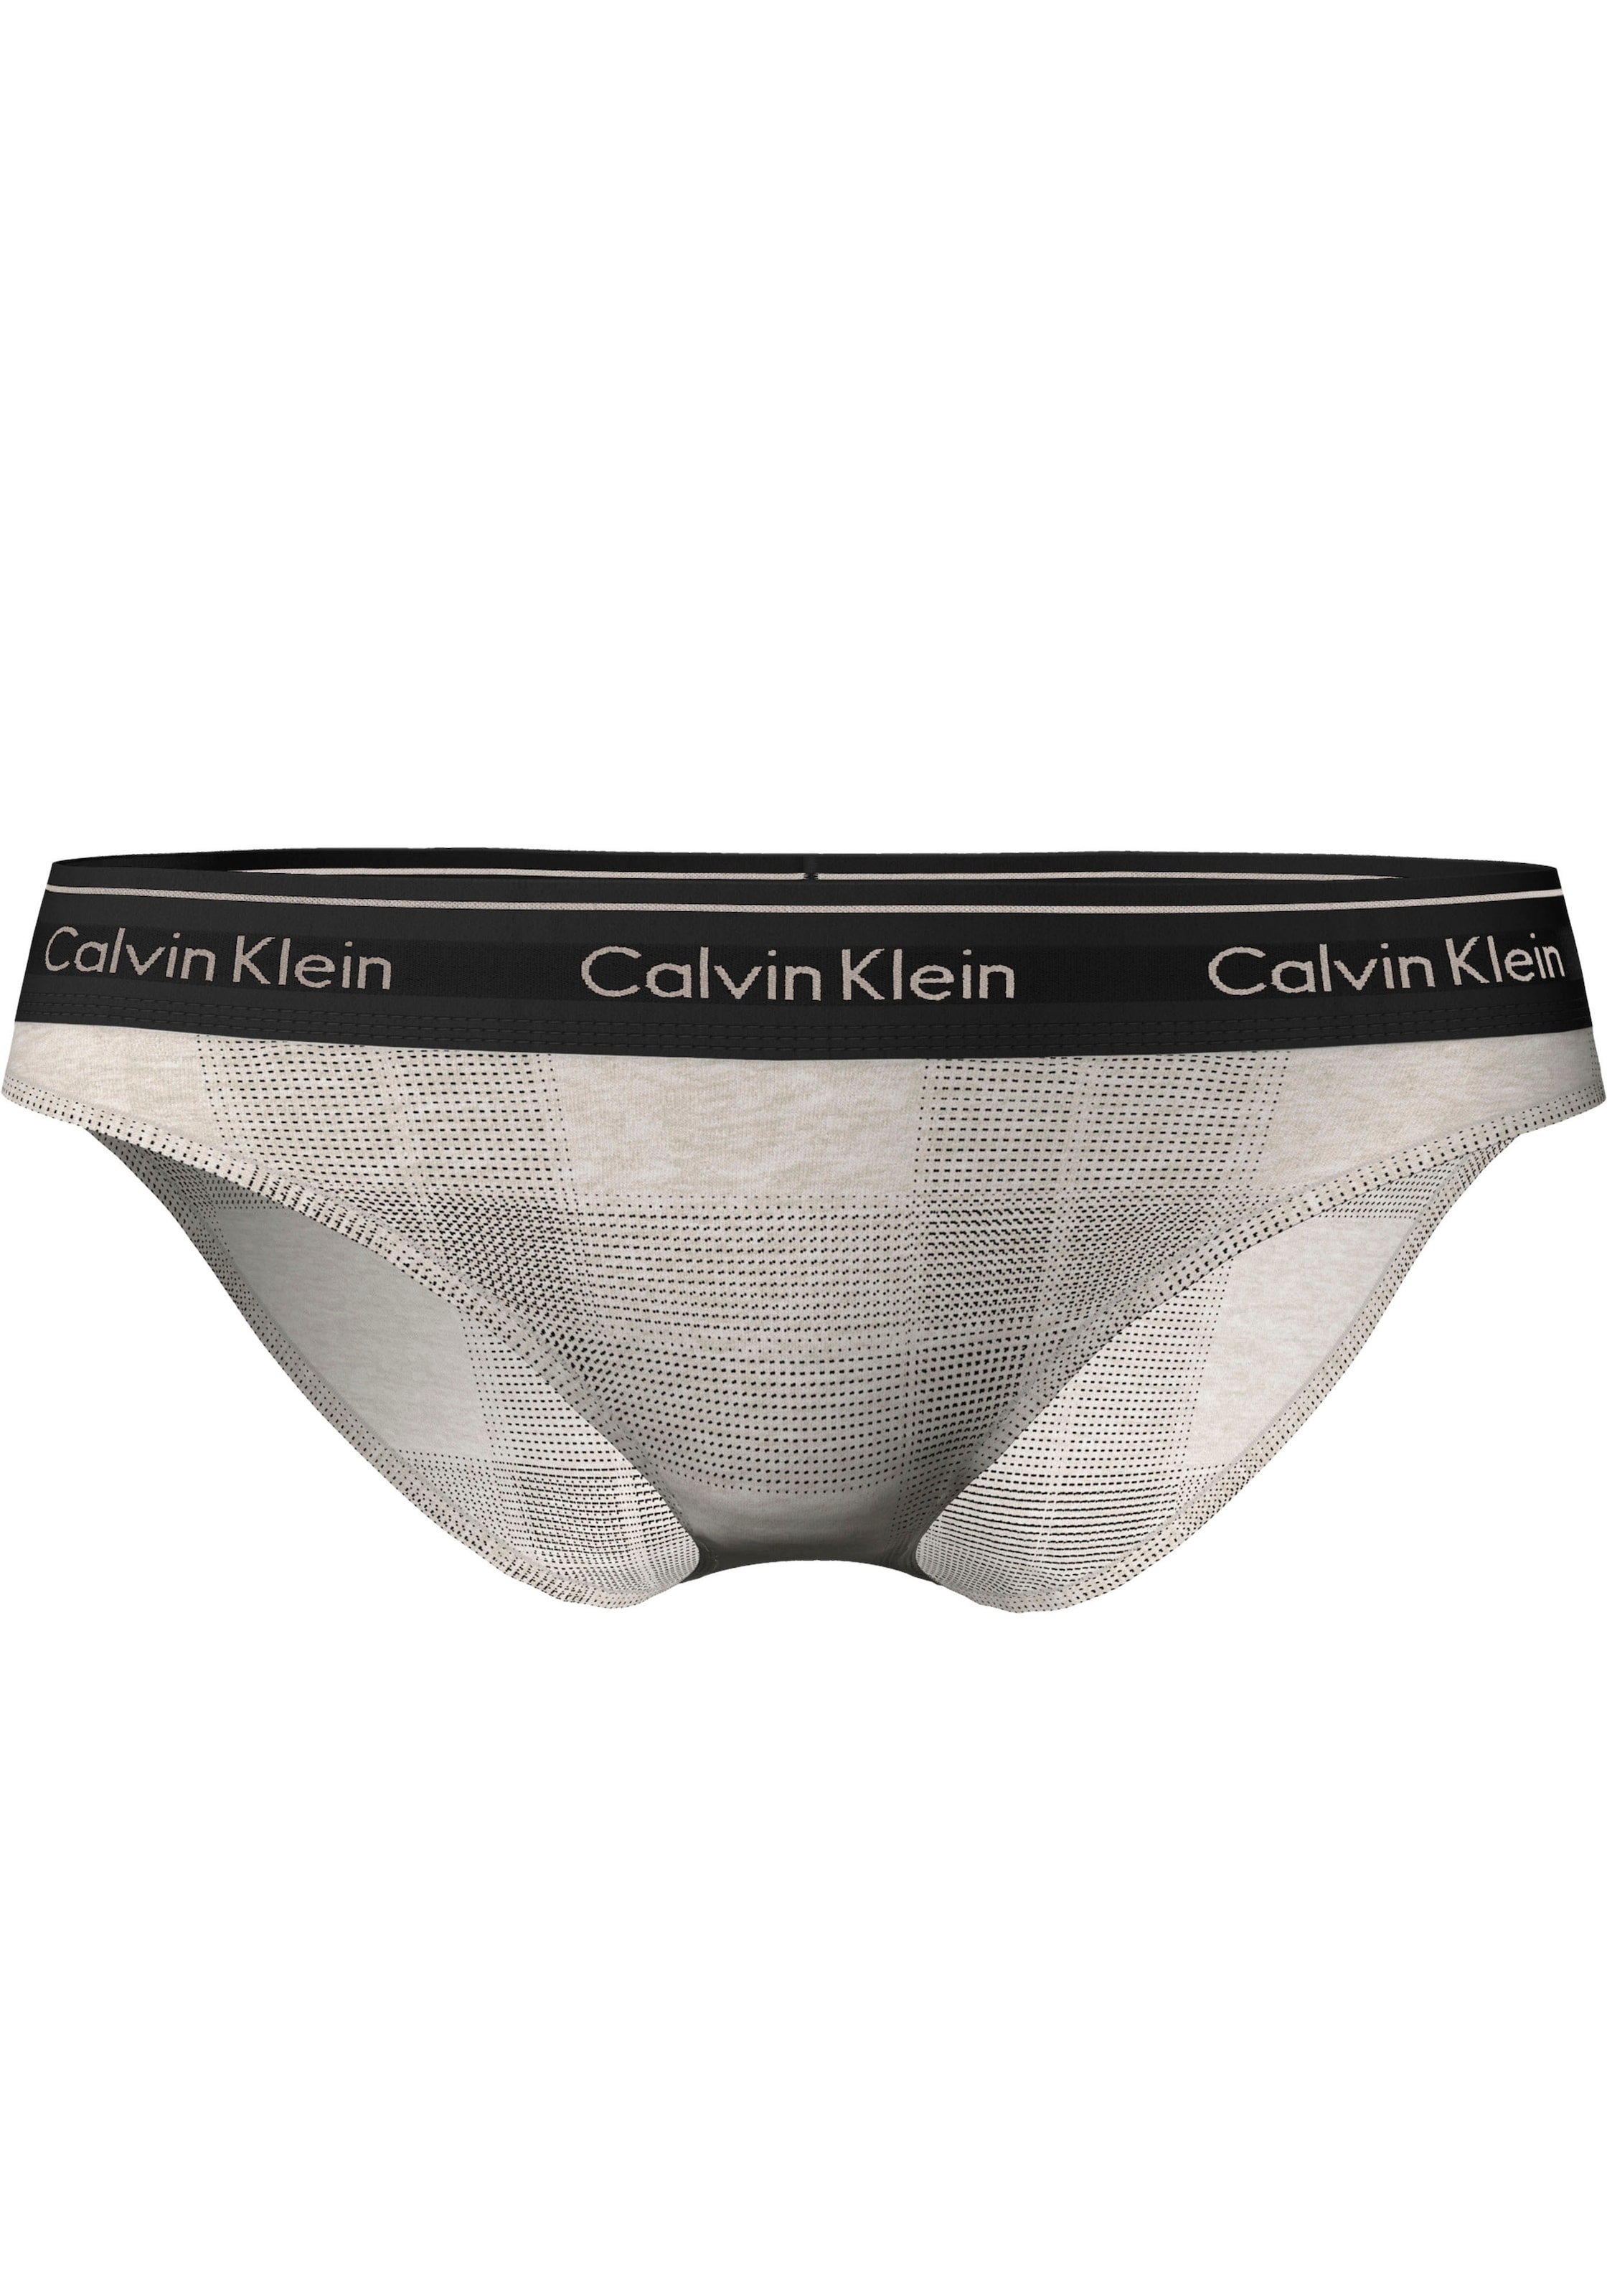 ♕ Calvin Klein bestellen versandkostenfrei Karo-Look im modischen Bikinislip